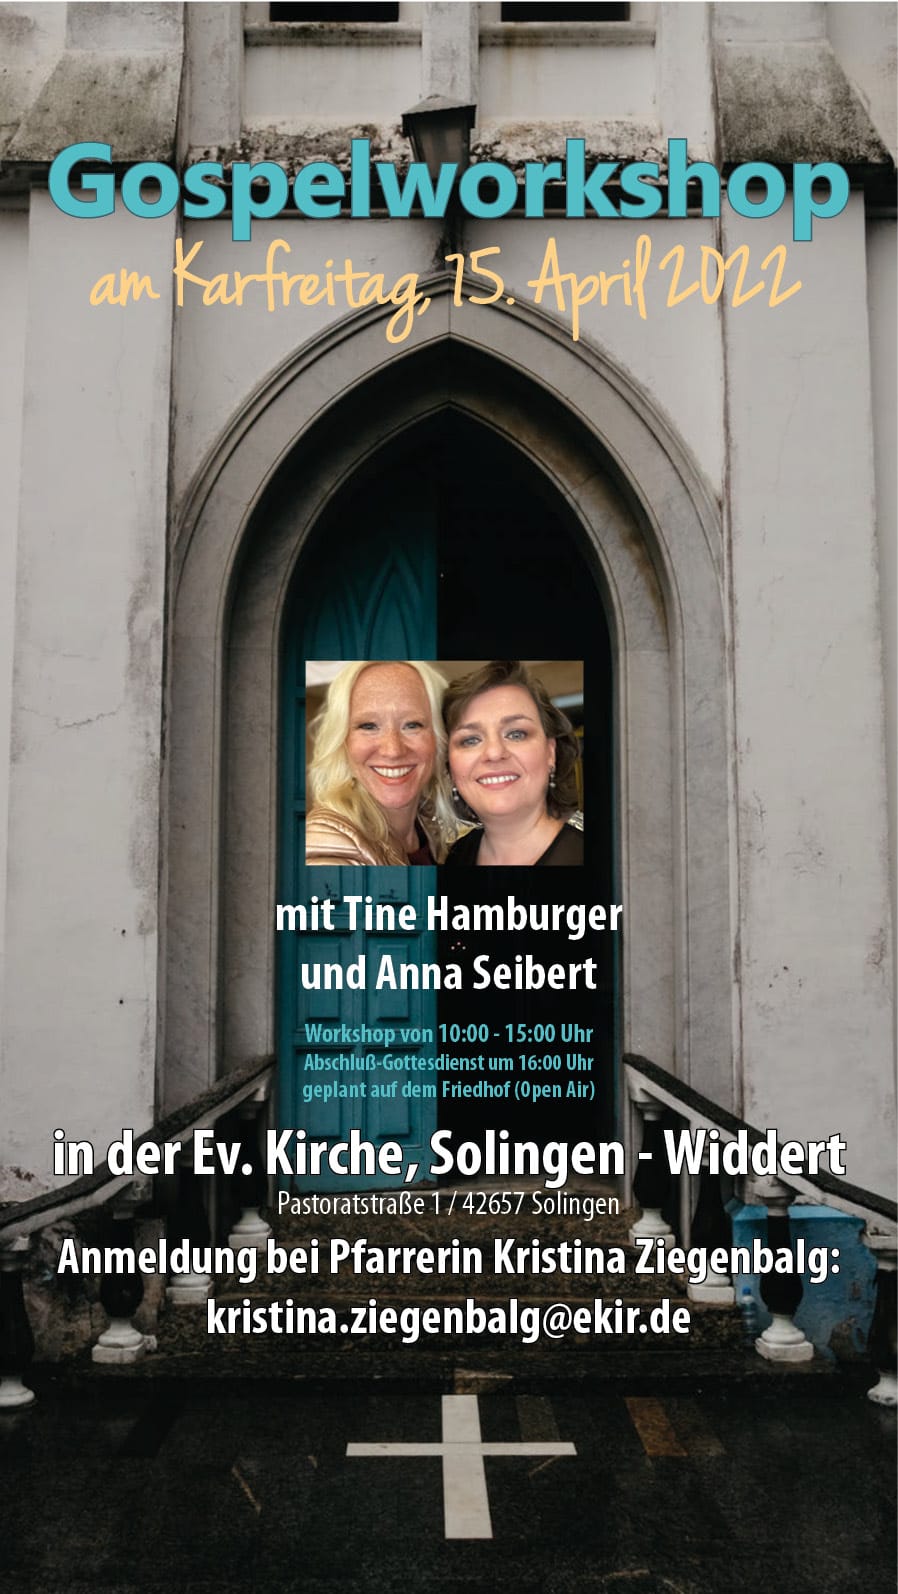 Gospelworkshop am Karfreitag 15.4.2022 mit Tine Hamburger und Anna Seibert